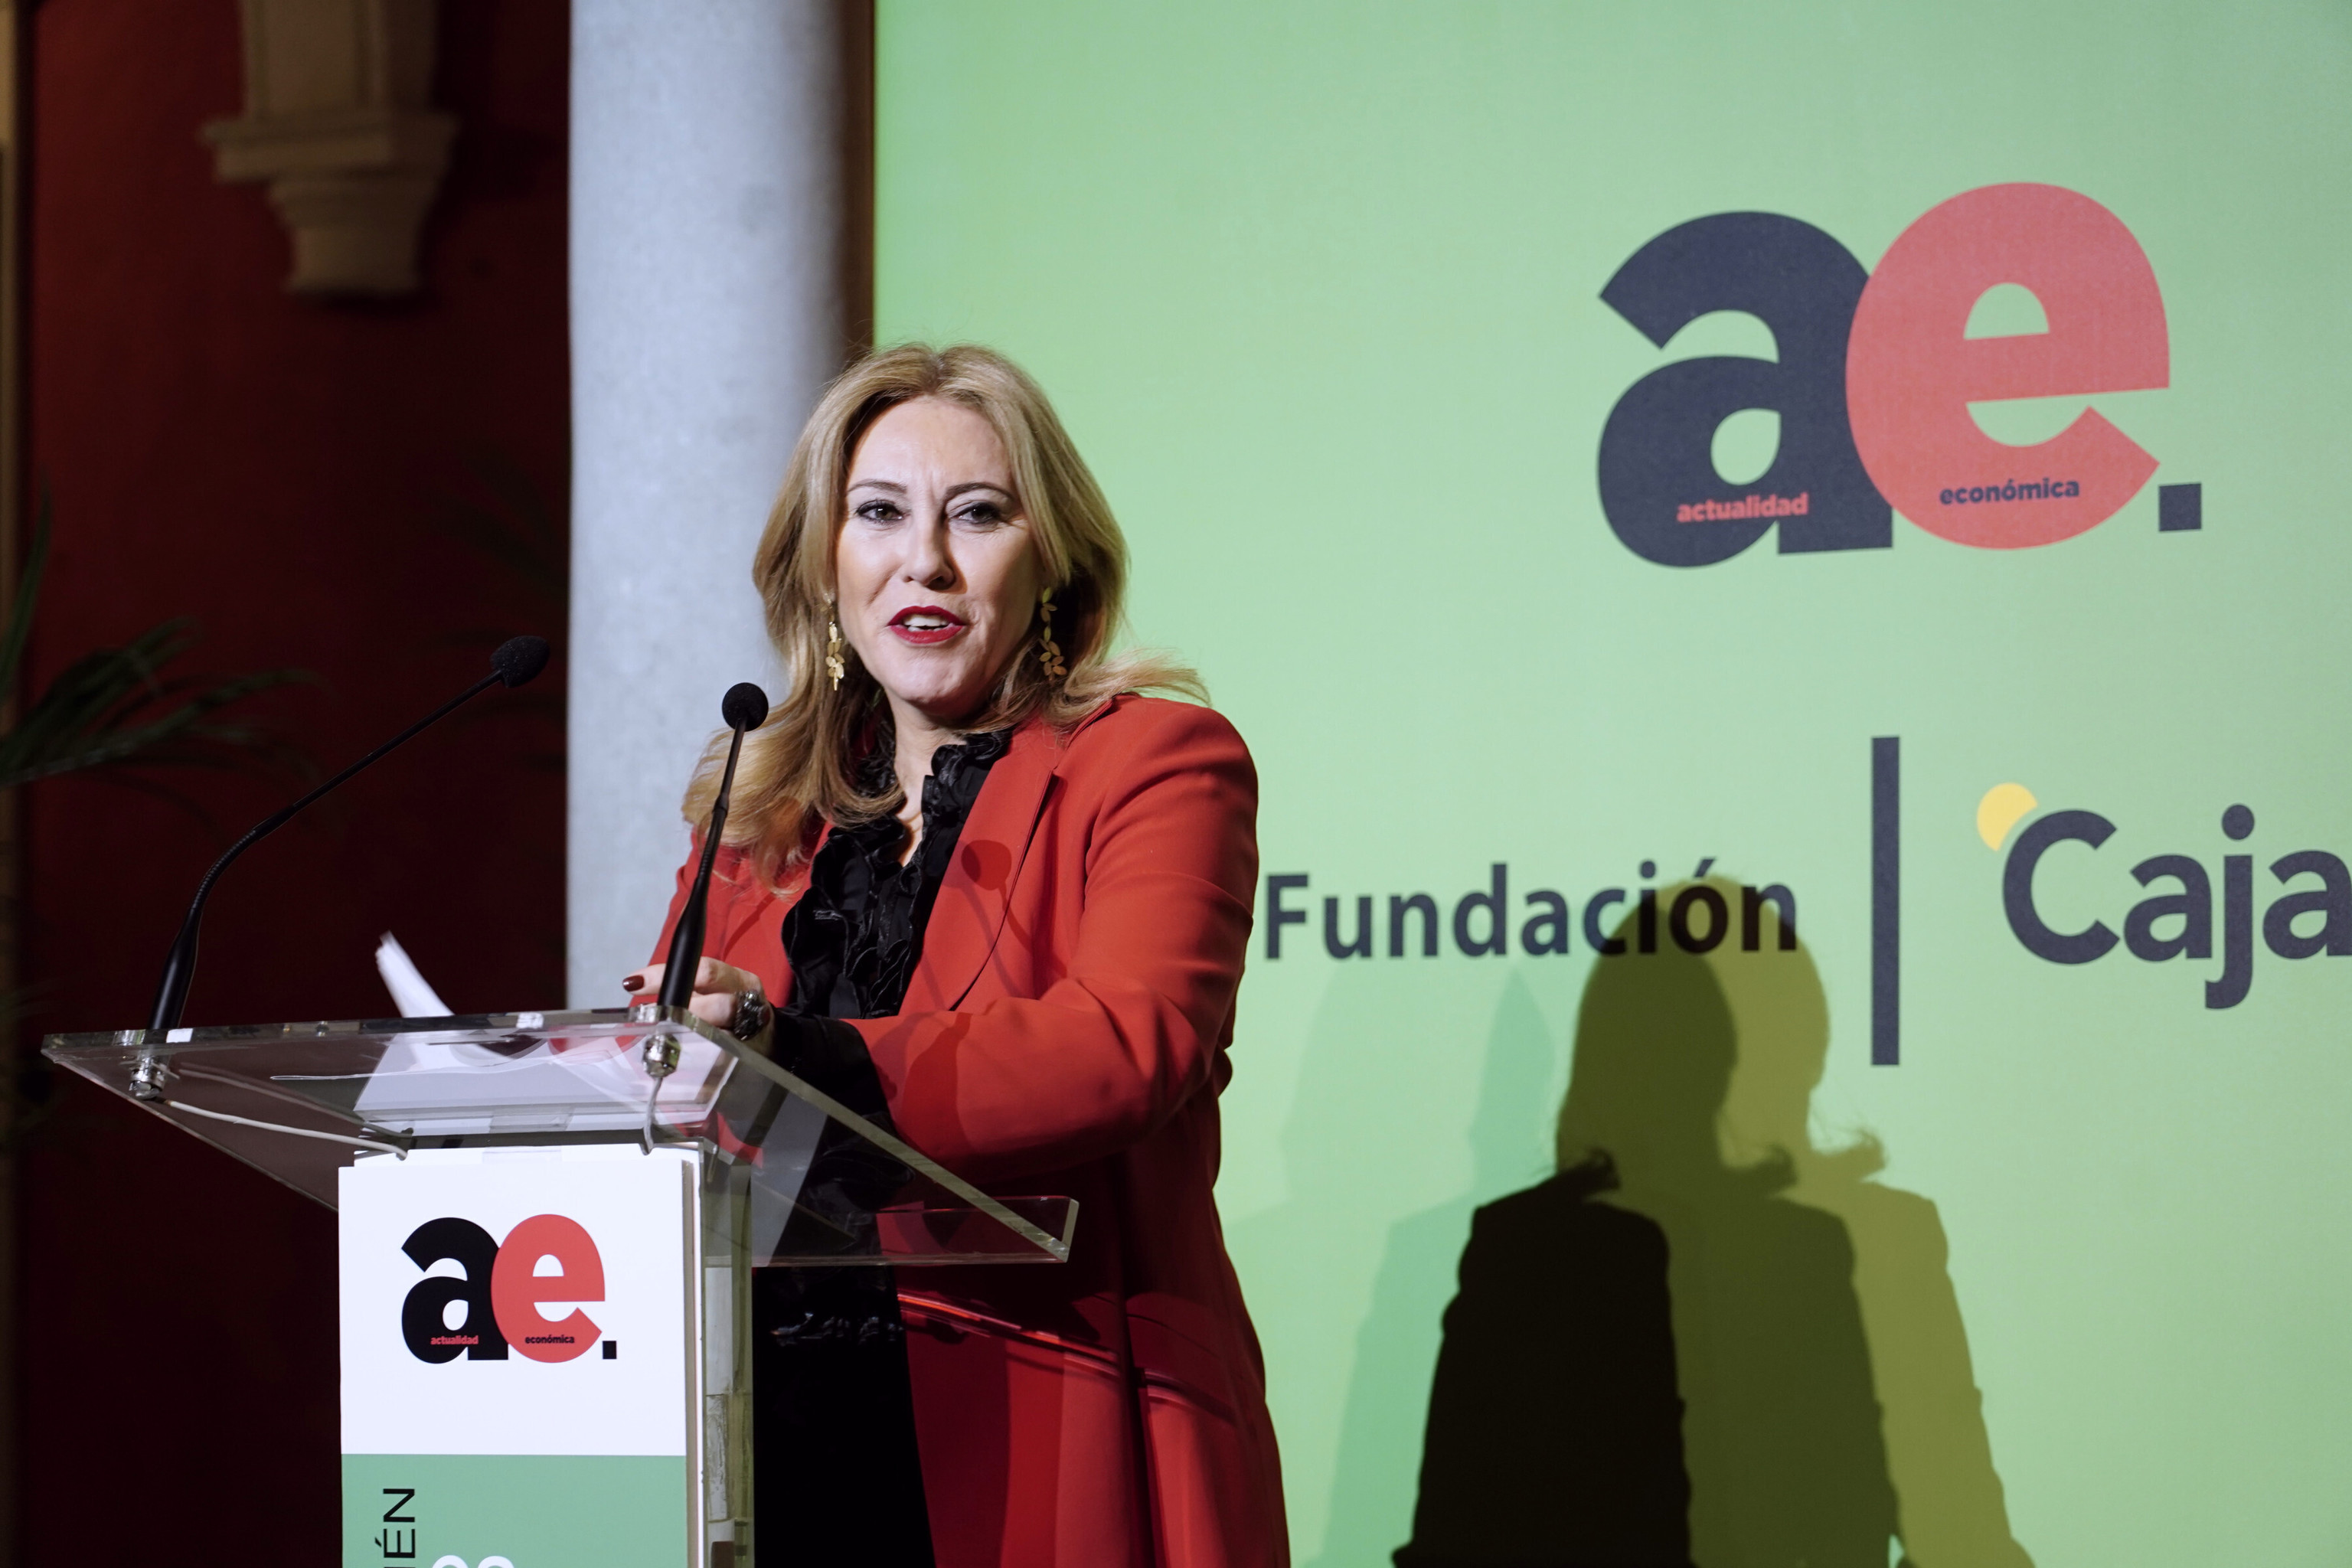 La consejera de Economa, Hacienda y Fondos Europeos, Carolina Espaa, en un acto de 'Actualidad Econmica', la revista de EL MUNDO.